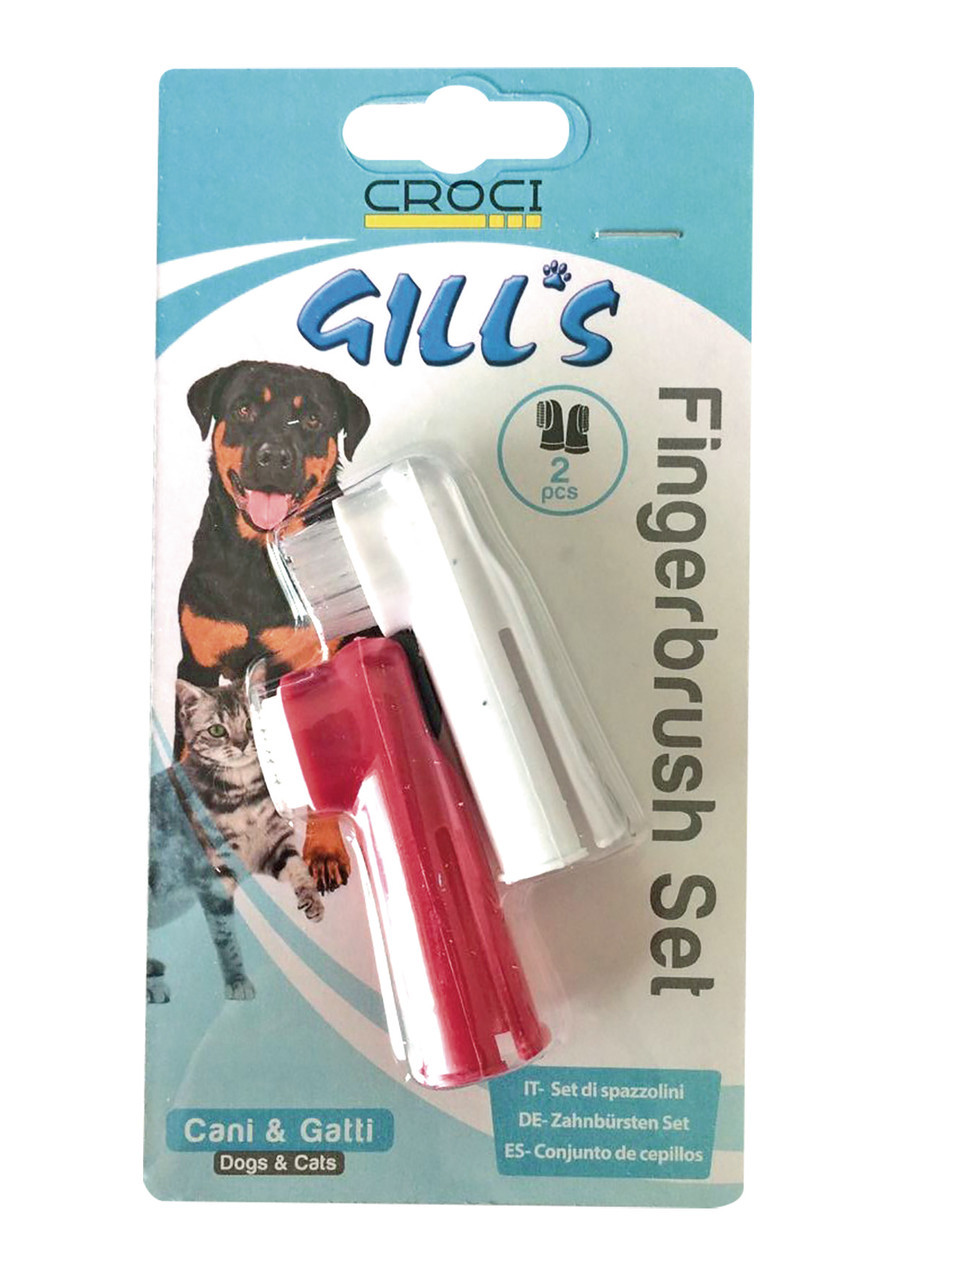 Фото - Косметика для собаки Croci Зубные щетки  Gills, 2 щетки в наборе  (168039)